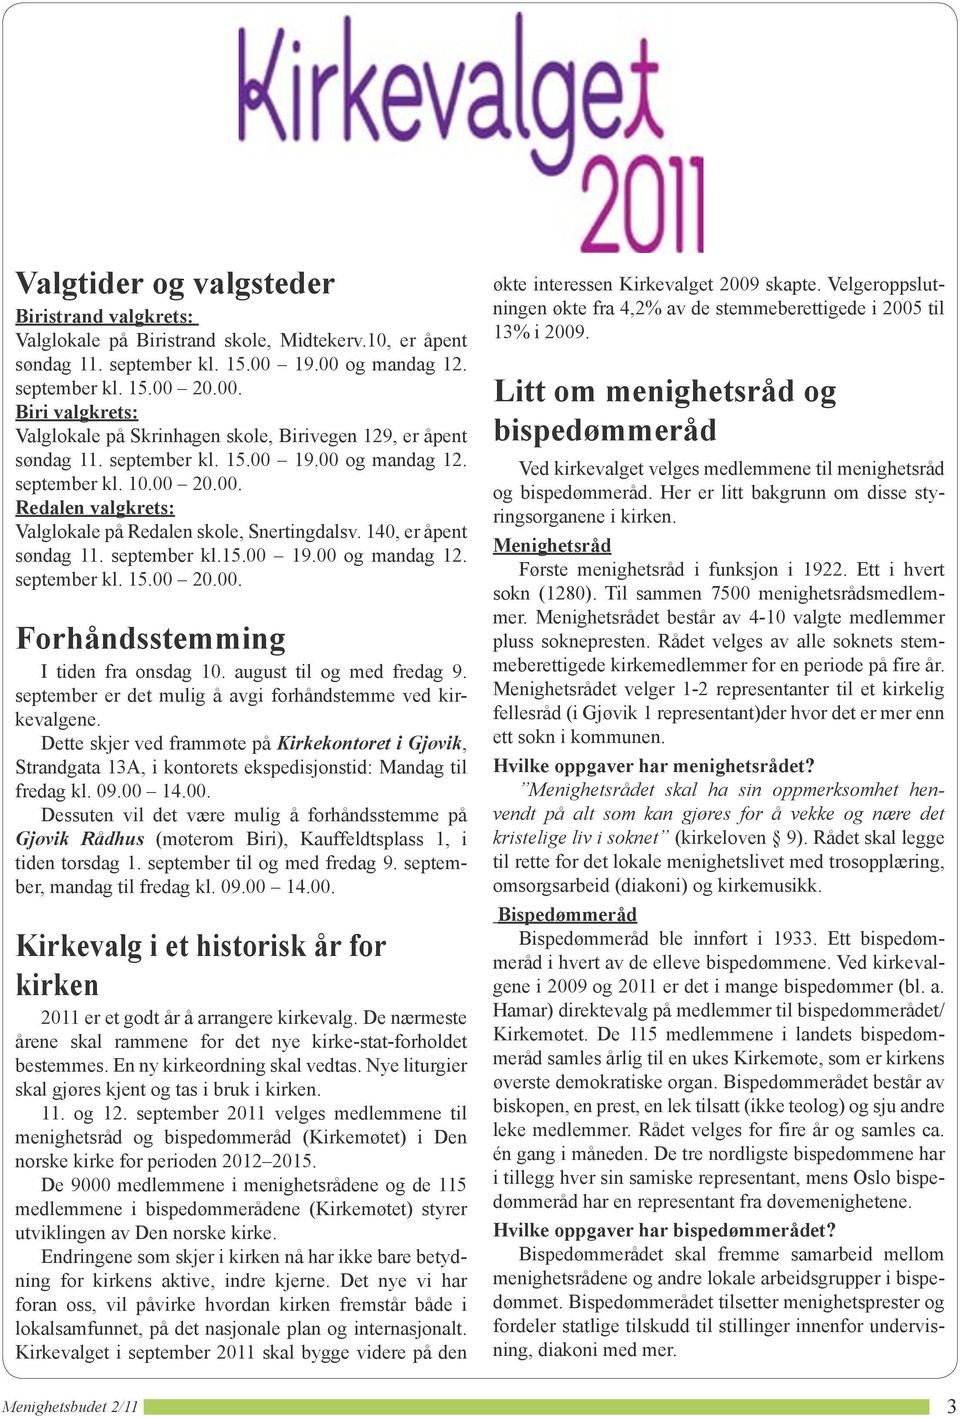 Samtidig med kommune Valglokale på Biristrand skole, sted. Det Midtekerv.10, betyr at det er kirkevalg er på samme åpent steder eller 13% i nærheten i 2009.